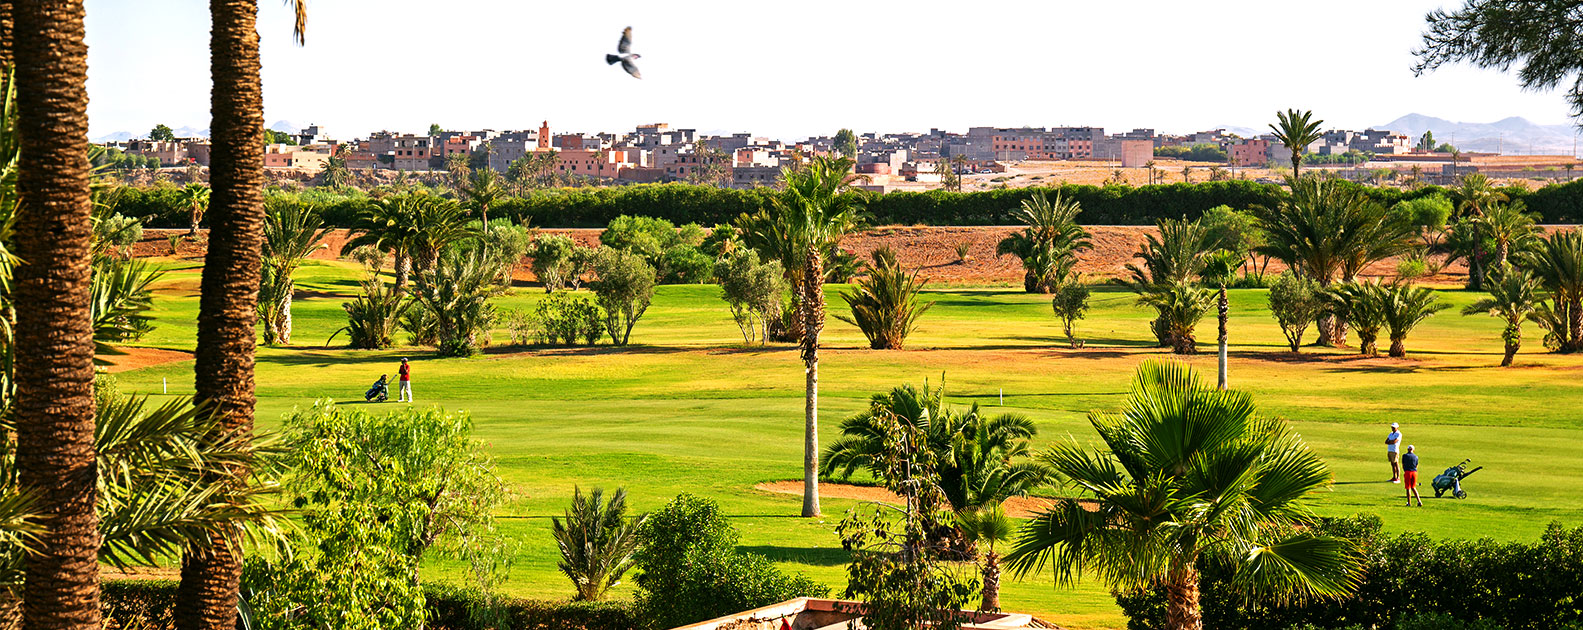 Удовольствия от гольфа в Марокко